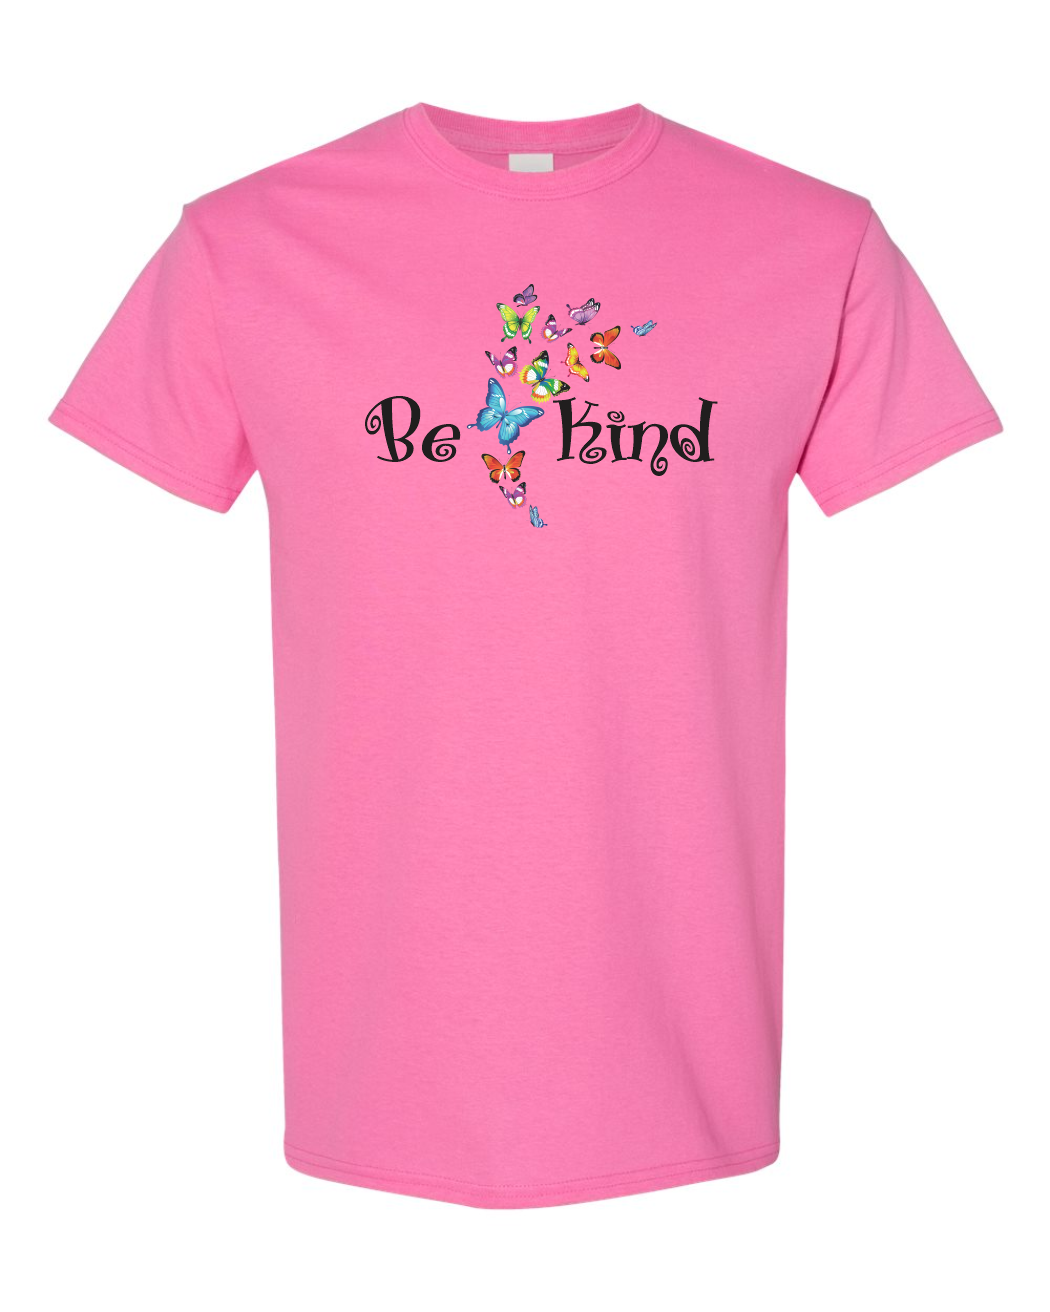 Be Kind Shirt - Be Kind